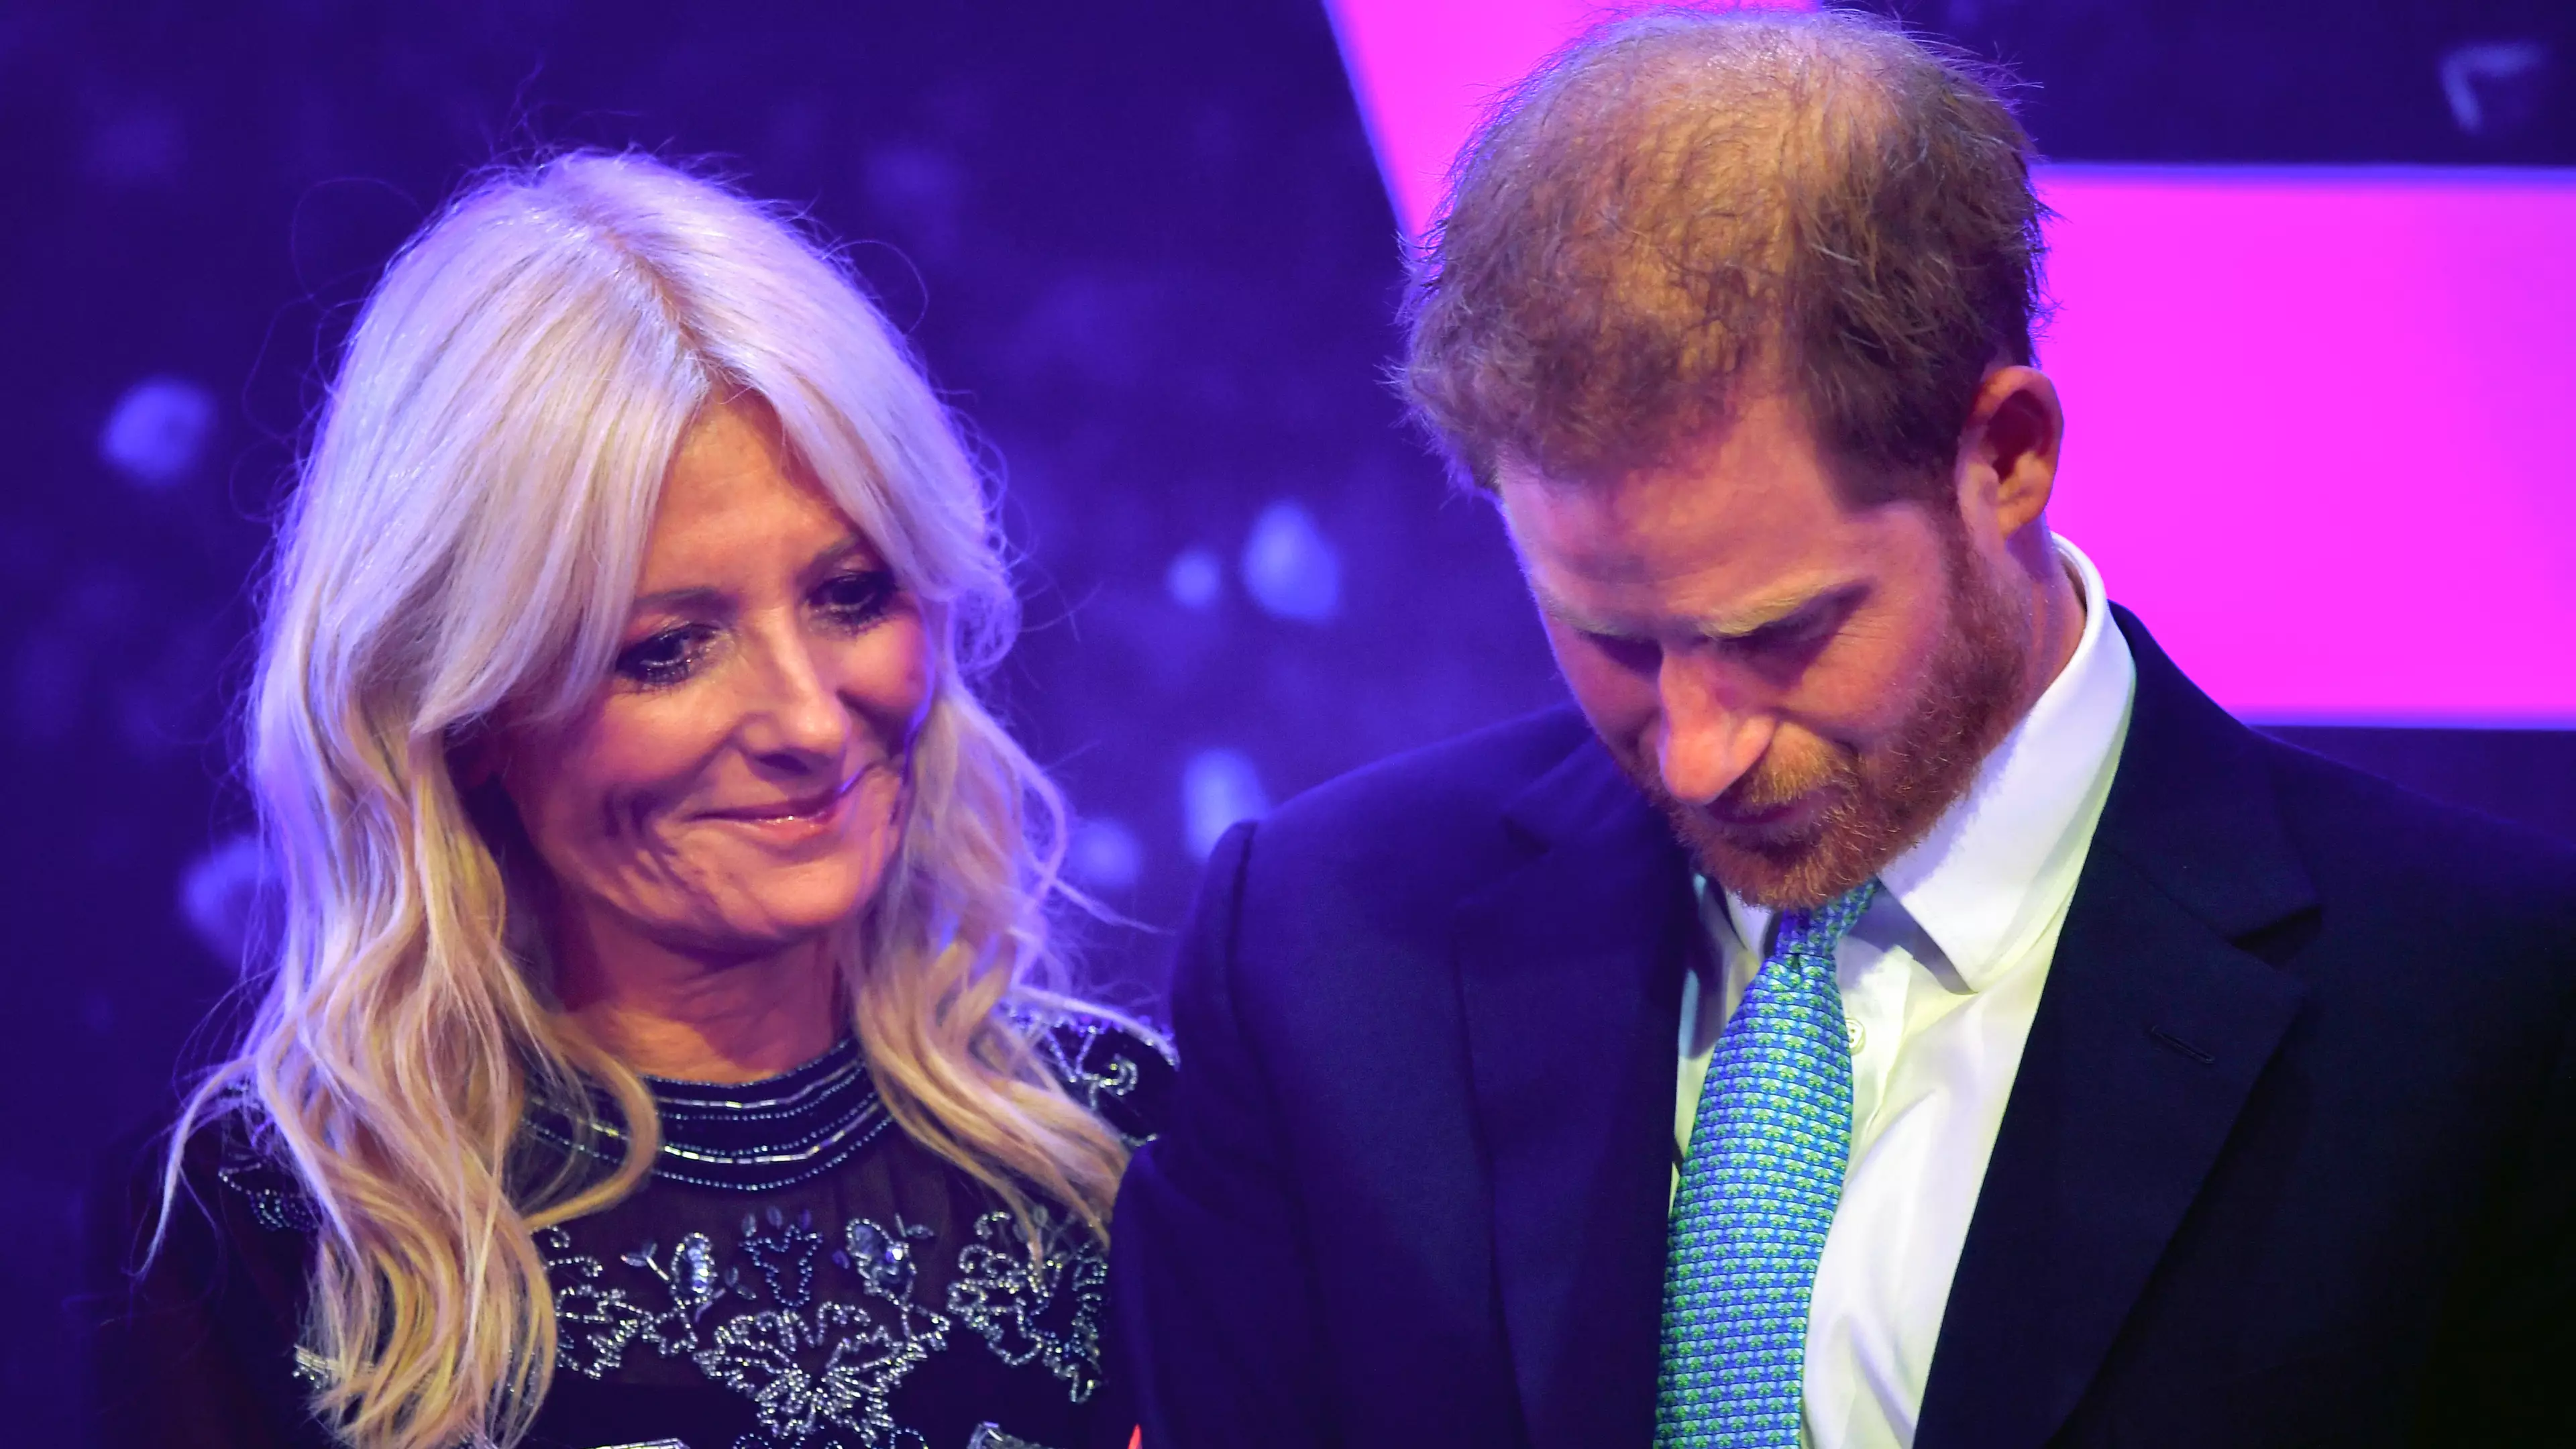 Prince Harry Breaks Down In Tears As He Recalls Meghan's Pregnancy In Emotional Speech